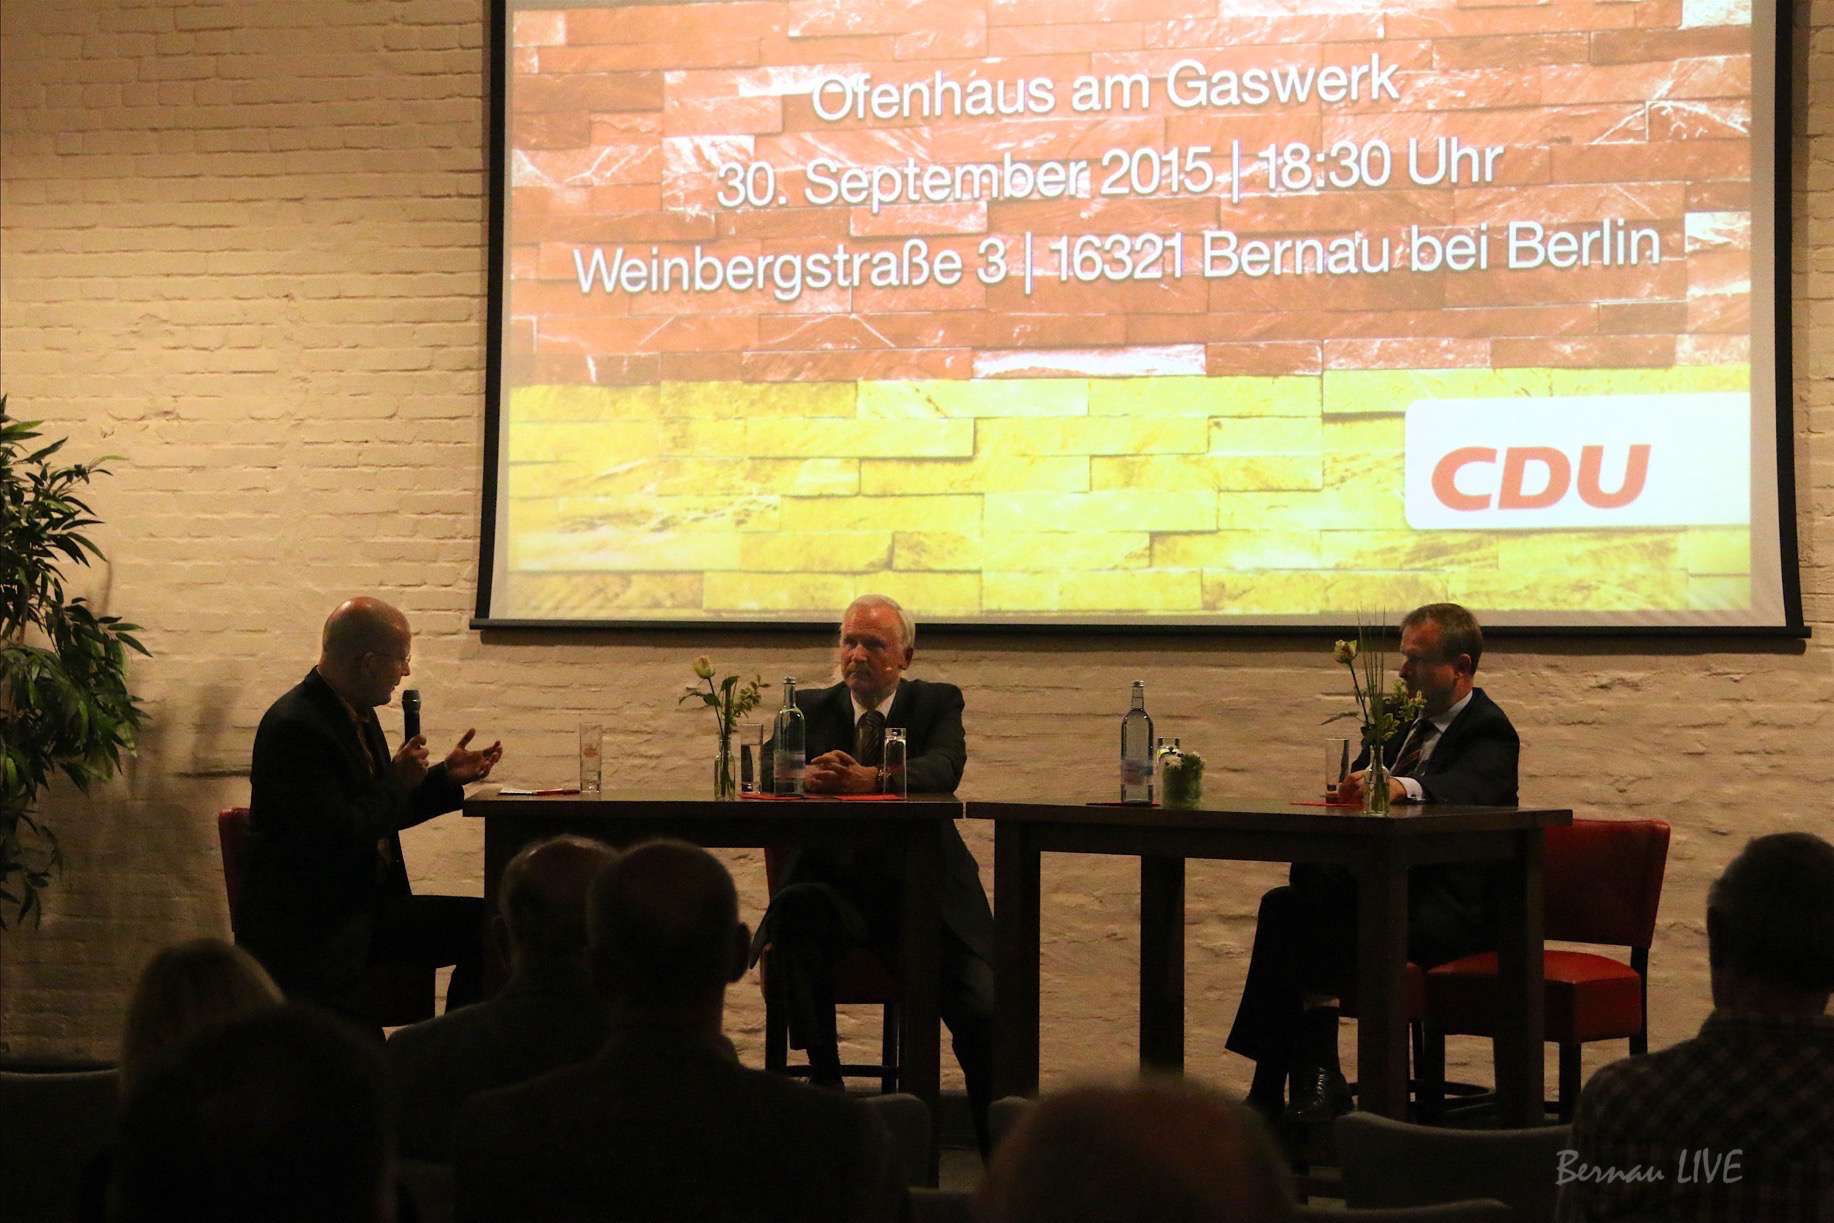 Bernau: CDU lud zur Podiumsdiskussion 25 Jahre deutsche Einheit